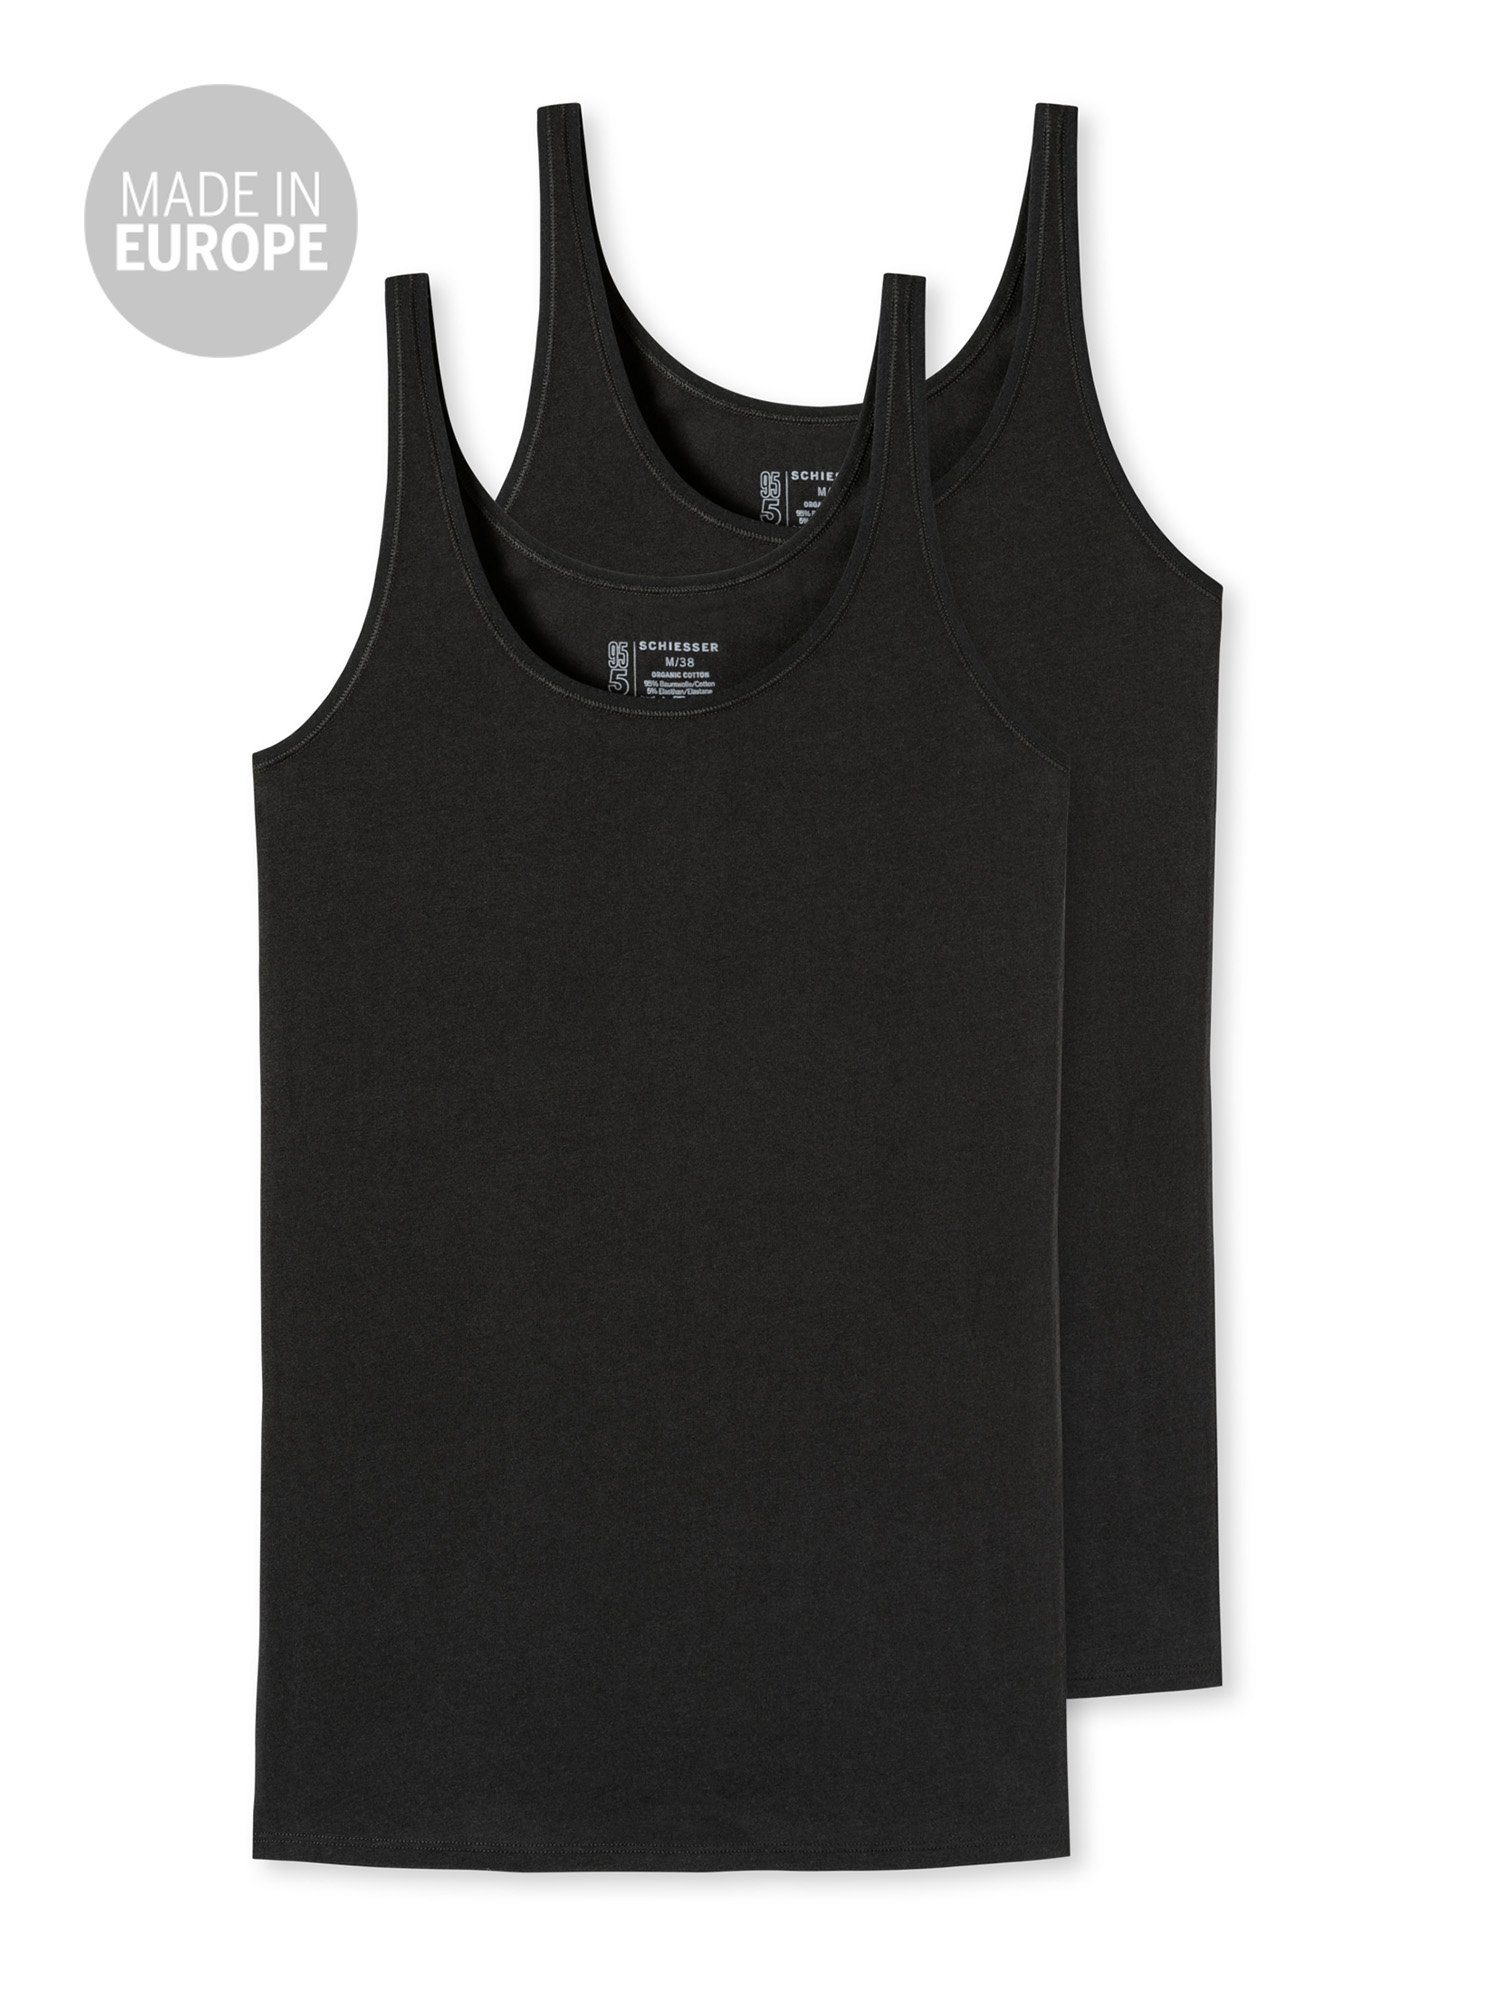 unterzieh-shirt unterhemd Tank-top 95/5 Schiesser Tanktop (2-tlg) schwarz